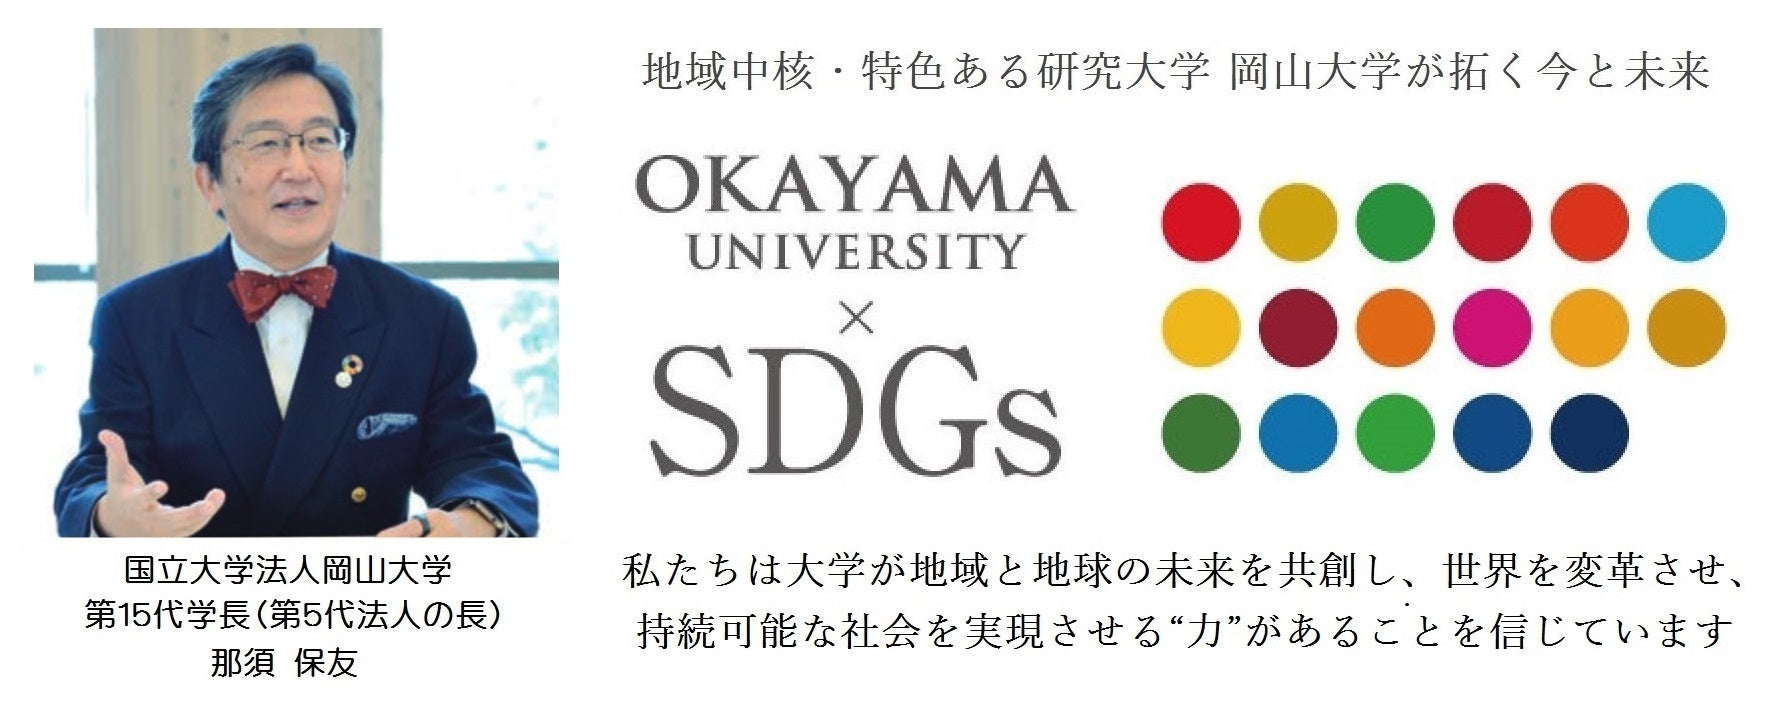 【岡山大学】文明動態学研究所「持続可能な開発教育とは－国際法の歴史から－」〔1/31,水 オンライン〕